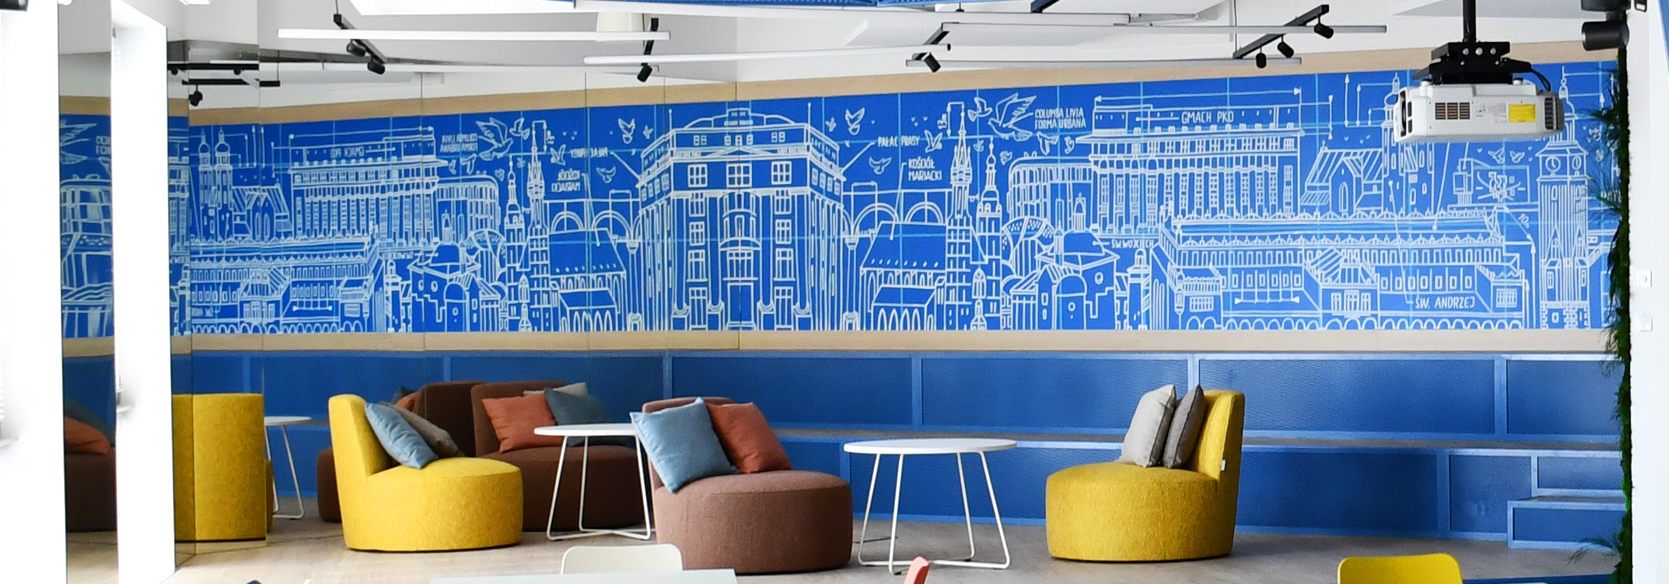 AUTODESK office murals header image